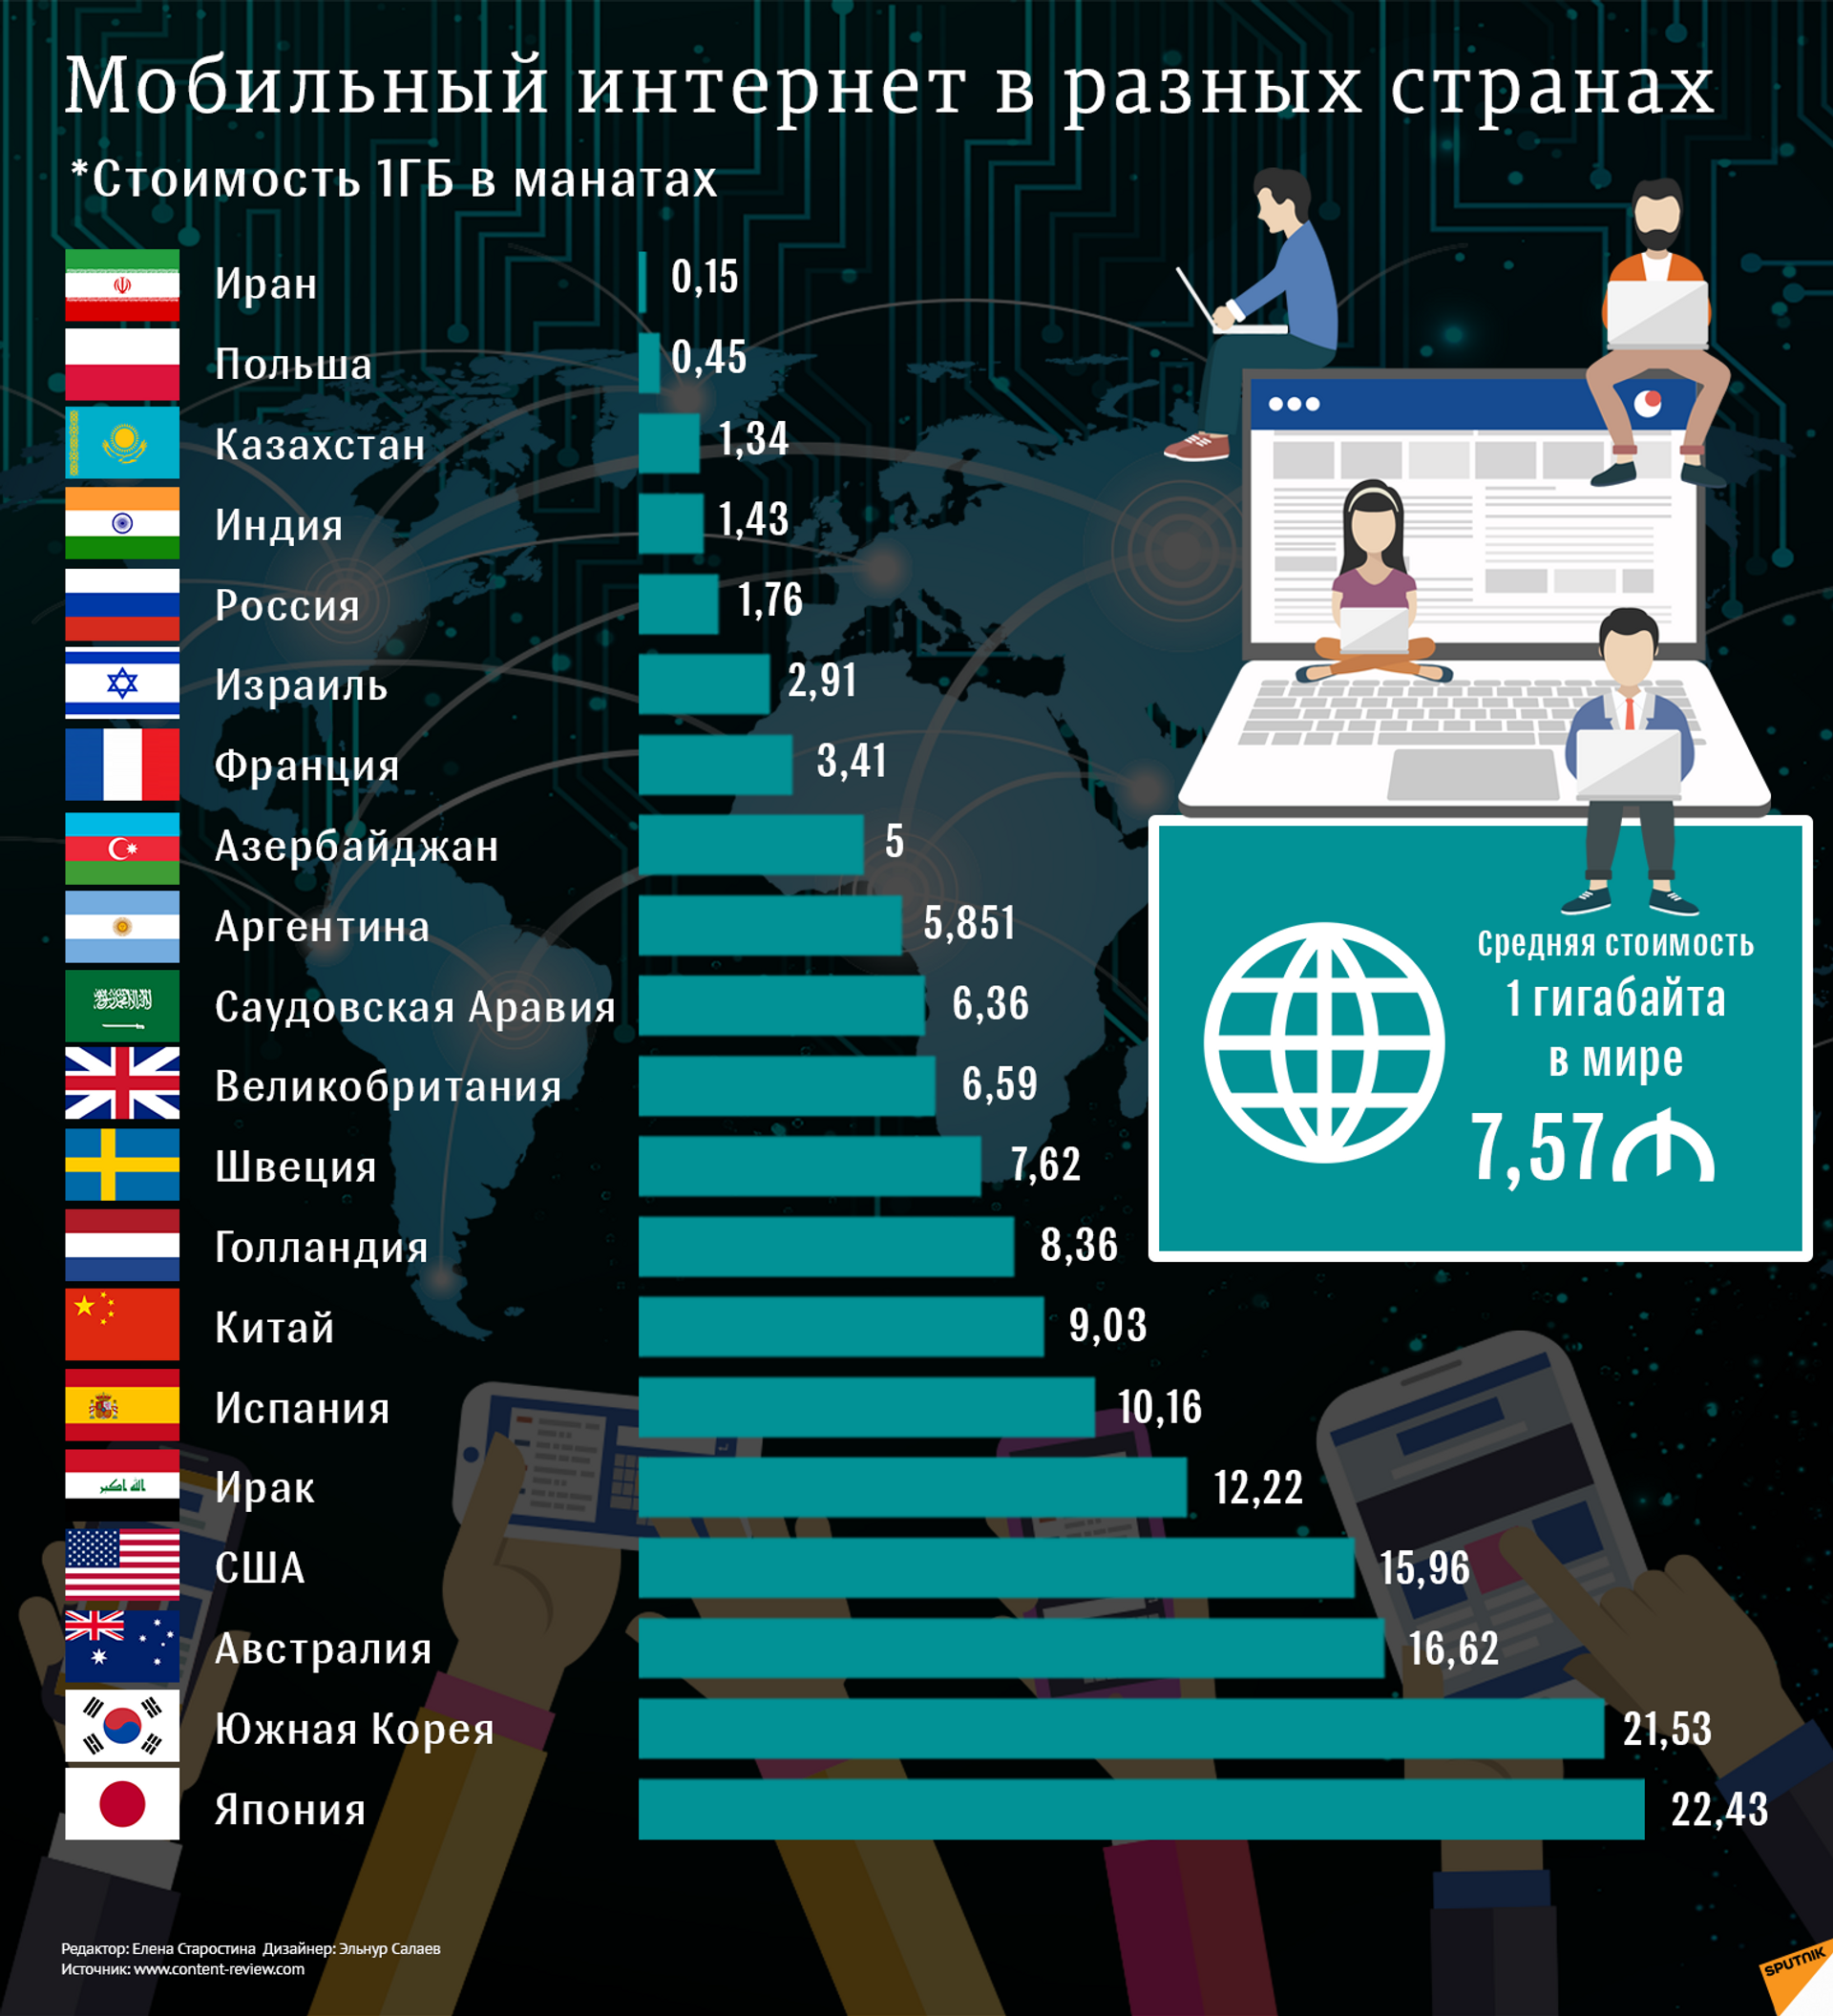 Места использования интернета. Самый лучший интернет в мире. Использование интернета в разных странах. Рейтинг разных стран. Стоимость интернета по странам.